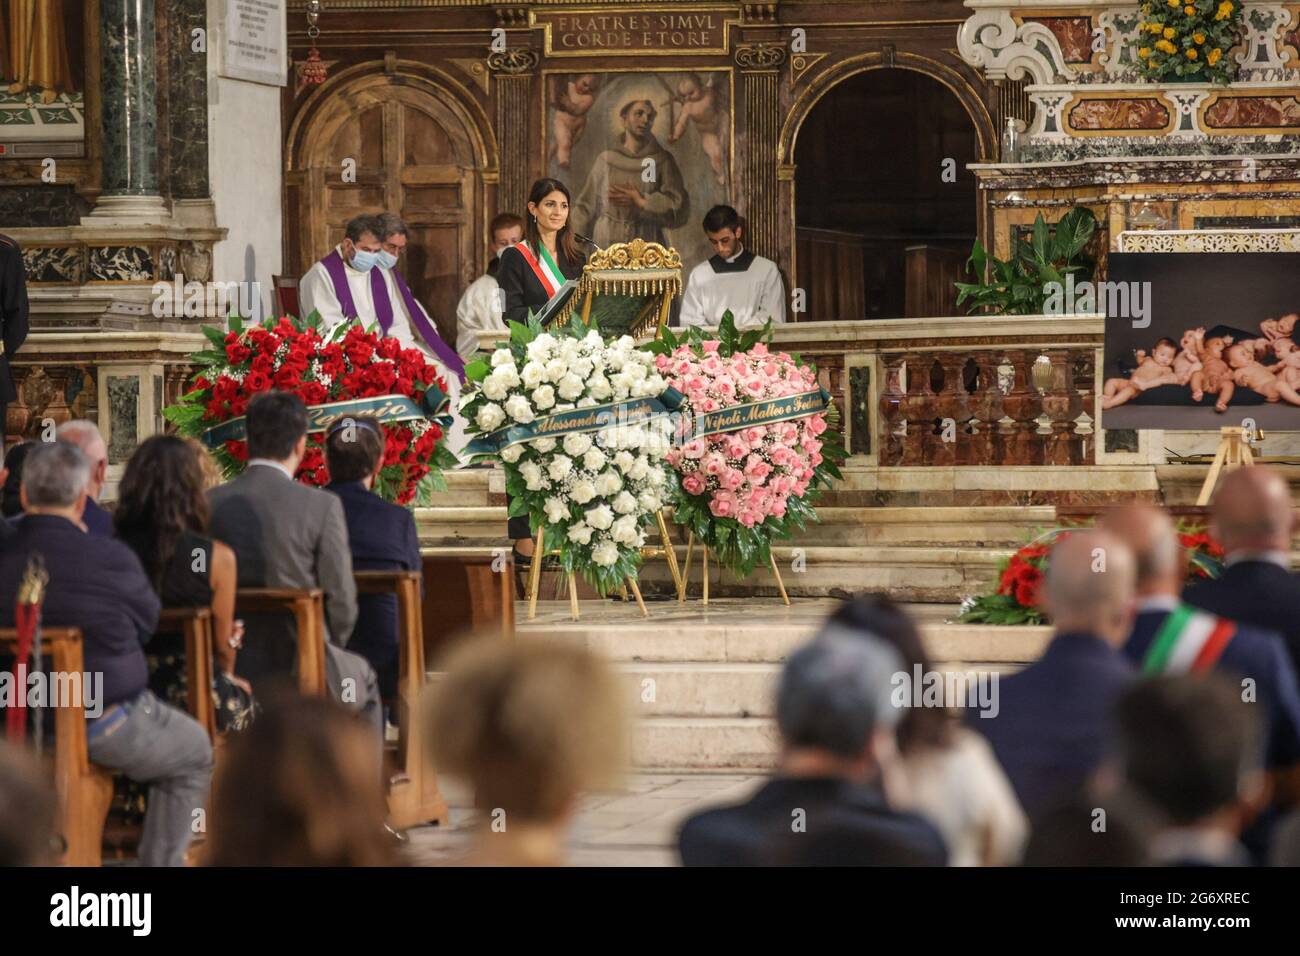 Roma, i funerali di Raffaella Carrà, la cerimonia nella basilica di Santa  Maria in Ara Coeli - Lorena Bianchetti Foto stock - Alamy